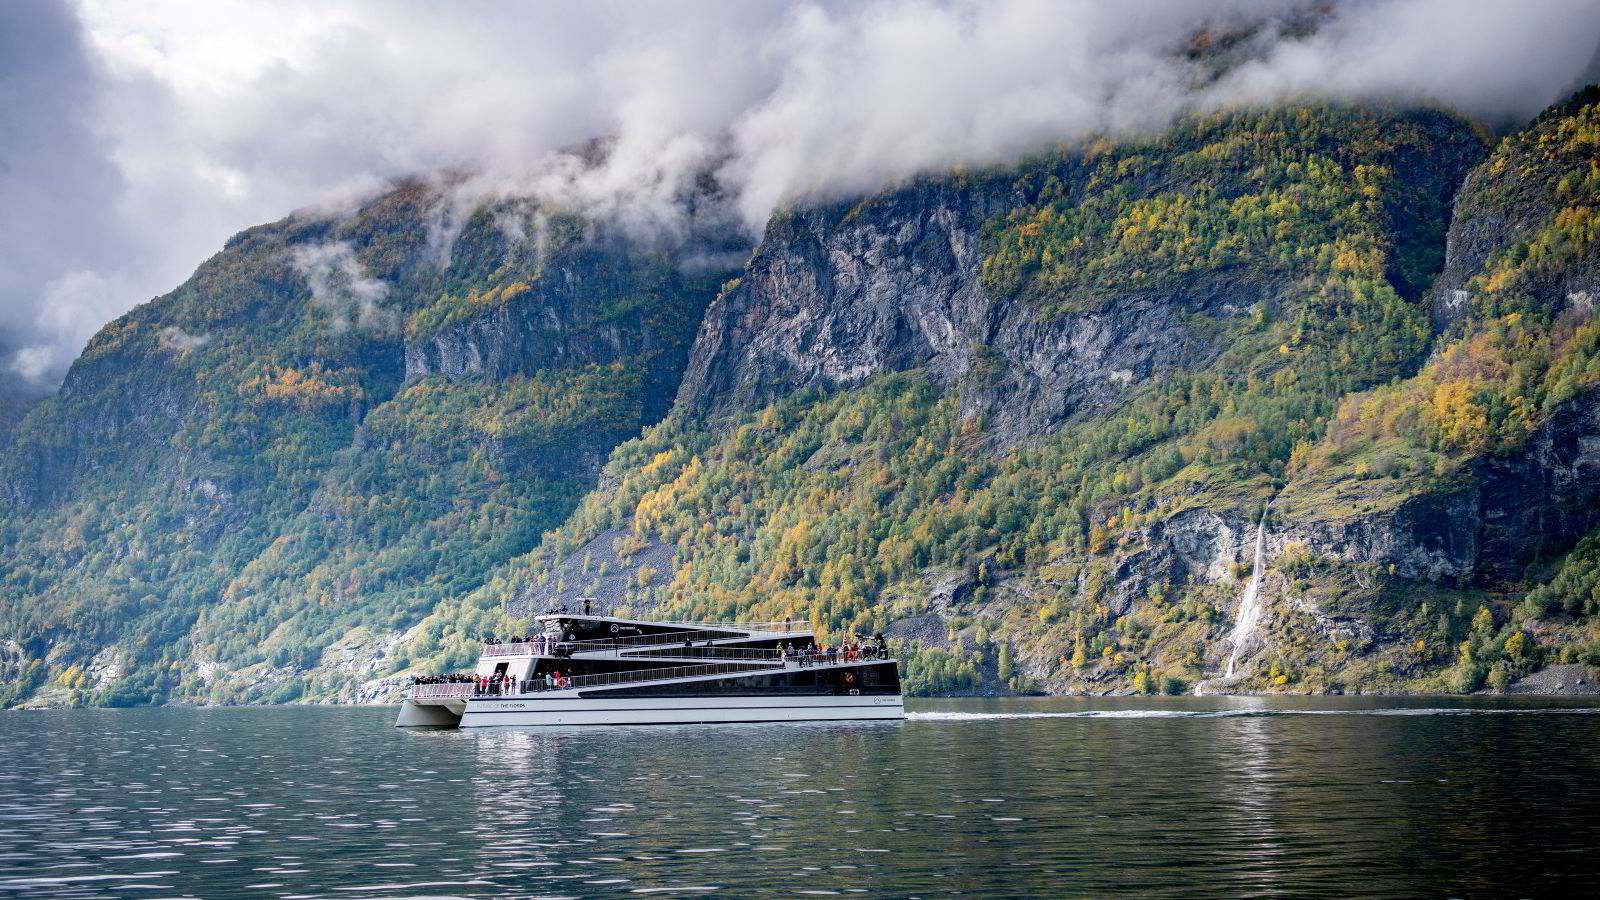 Norway’s Best på investorjakt – blitt eneeier i The Fjords